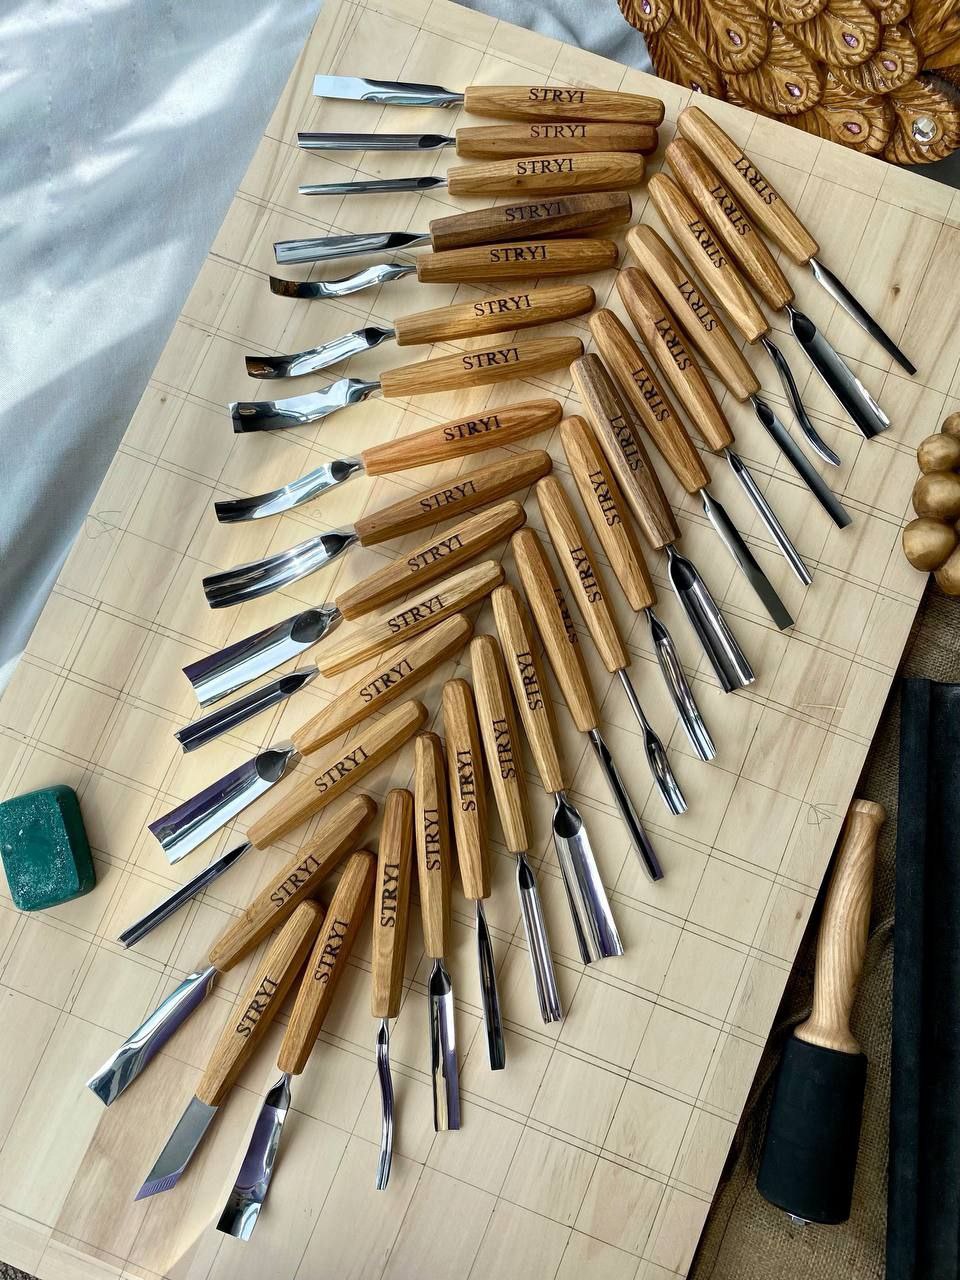 Juego de herramientas para tallar madera para tallado en relieve 12 piezas  STRYI Profi